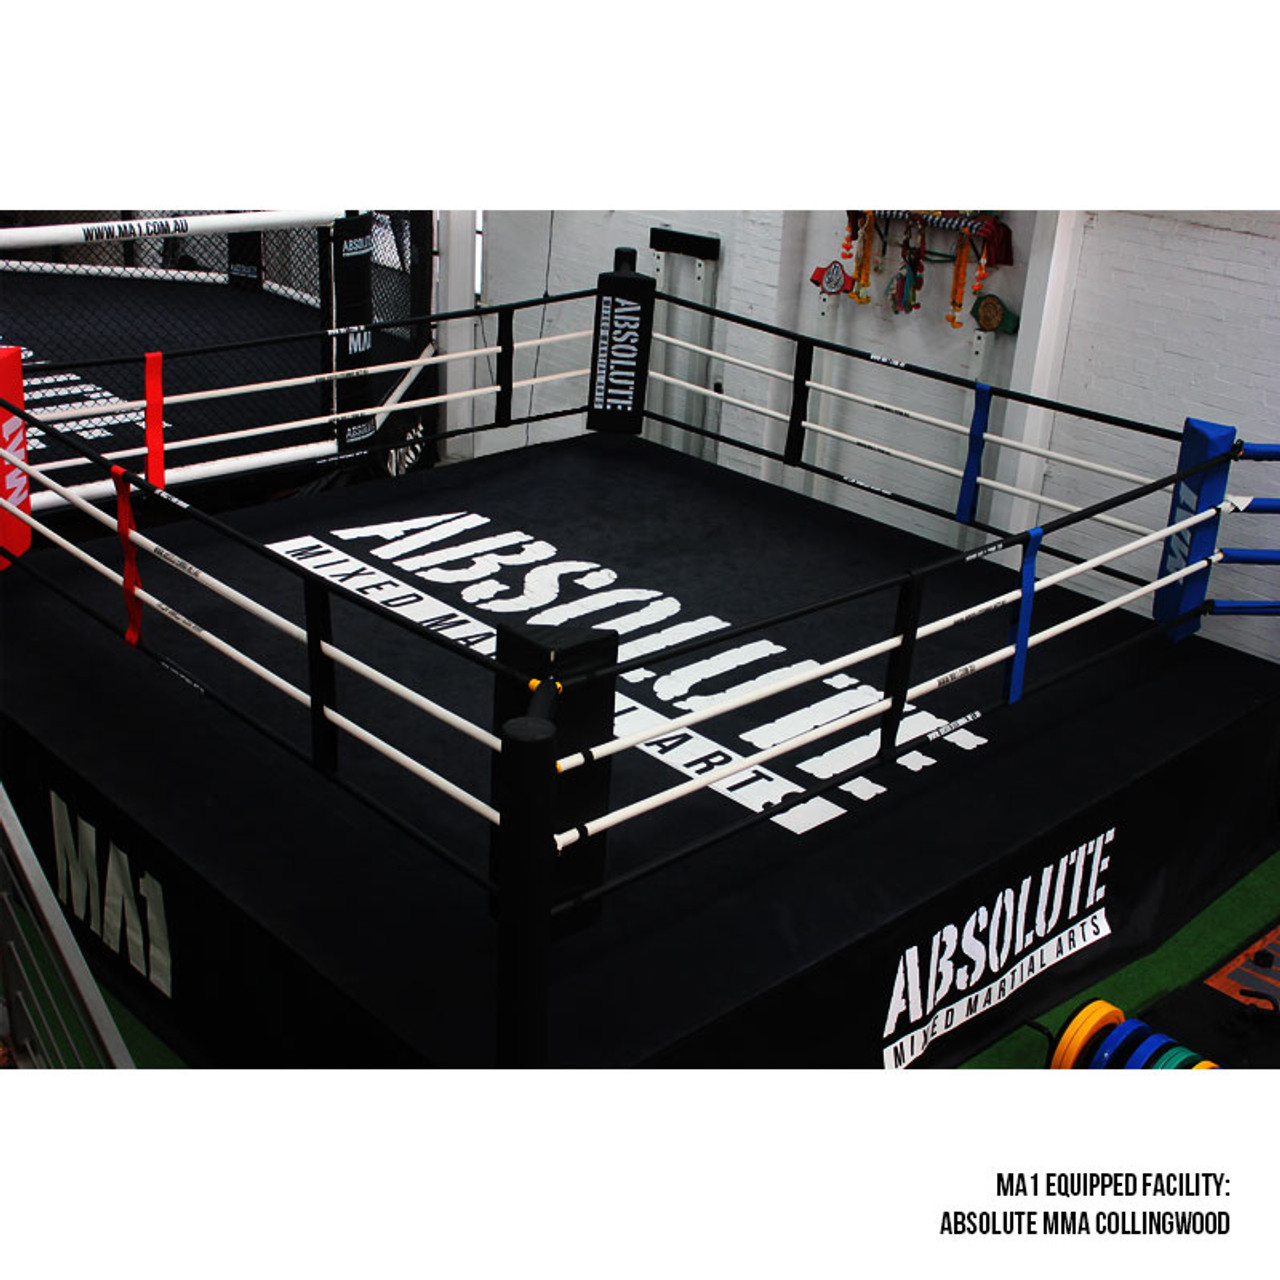 Boxing ring ropes aligment - SOUTH Kolkata Boxing CLUB | Facebook